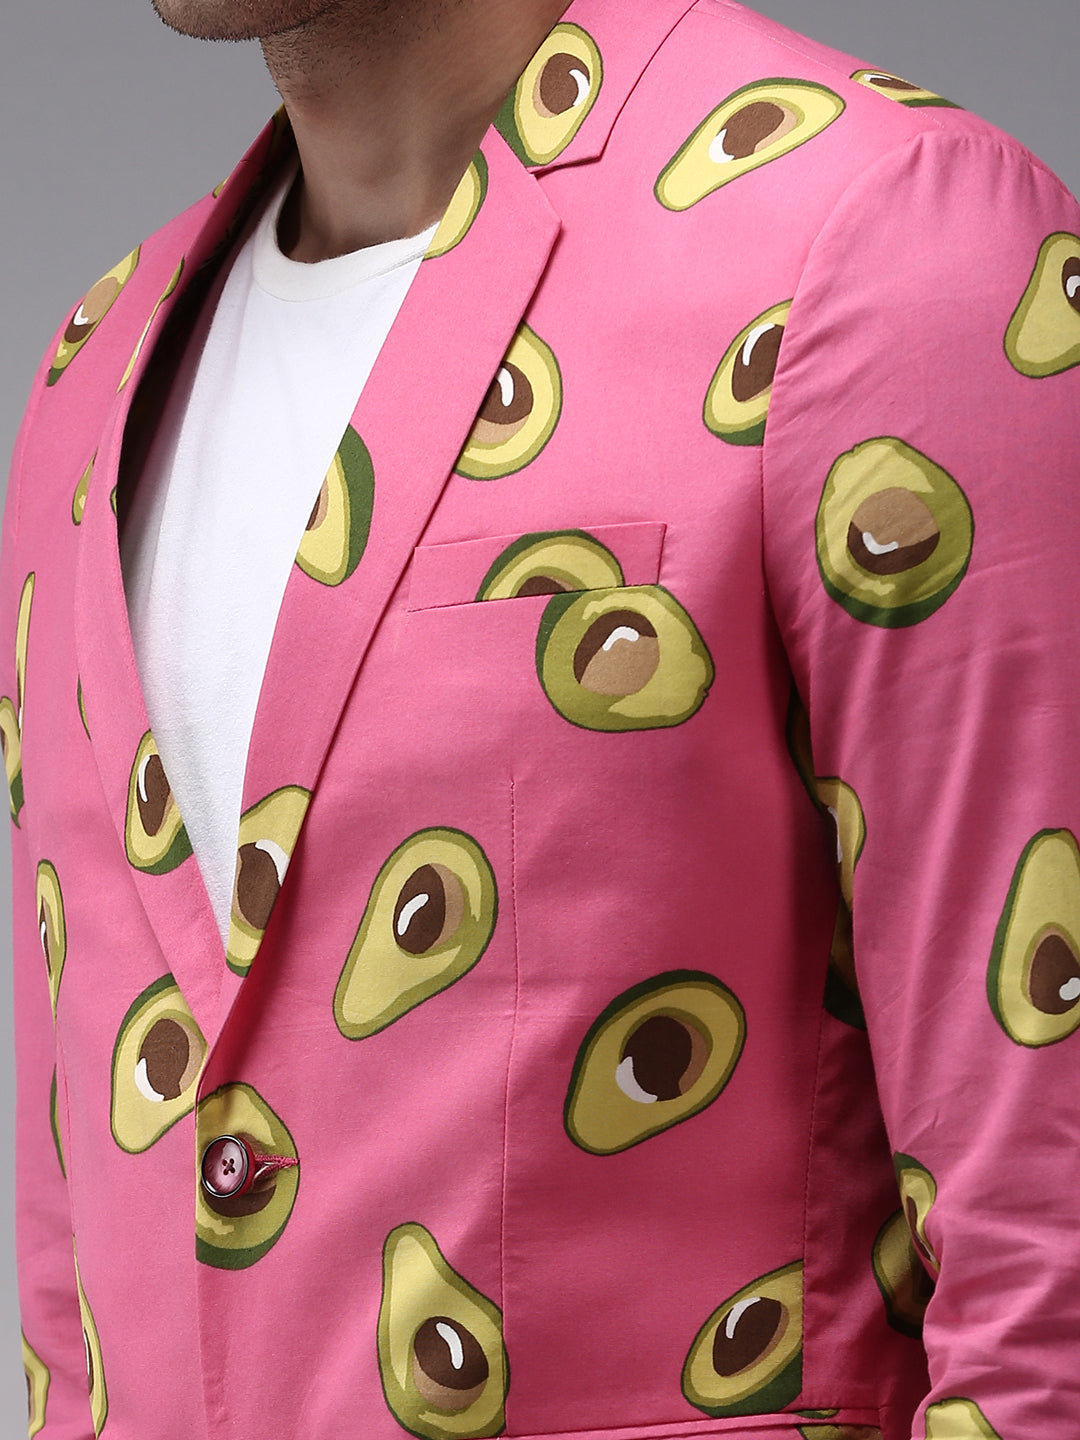 Men Pink Printed Blazer